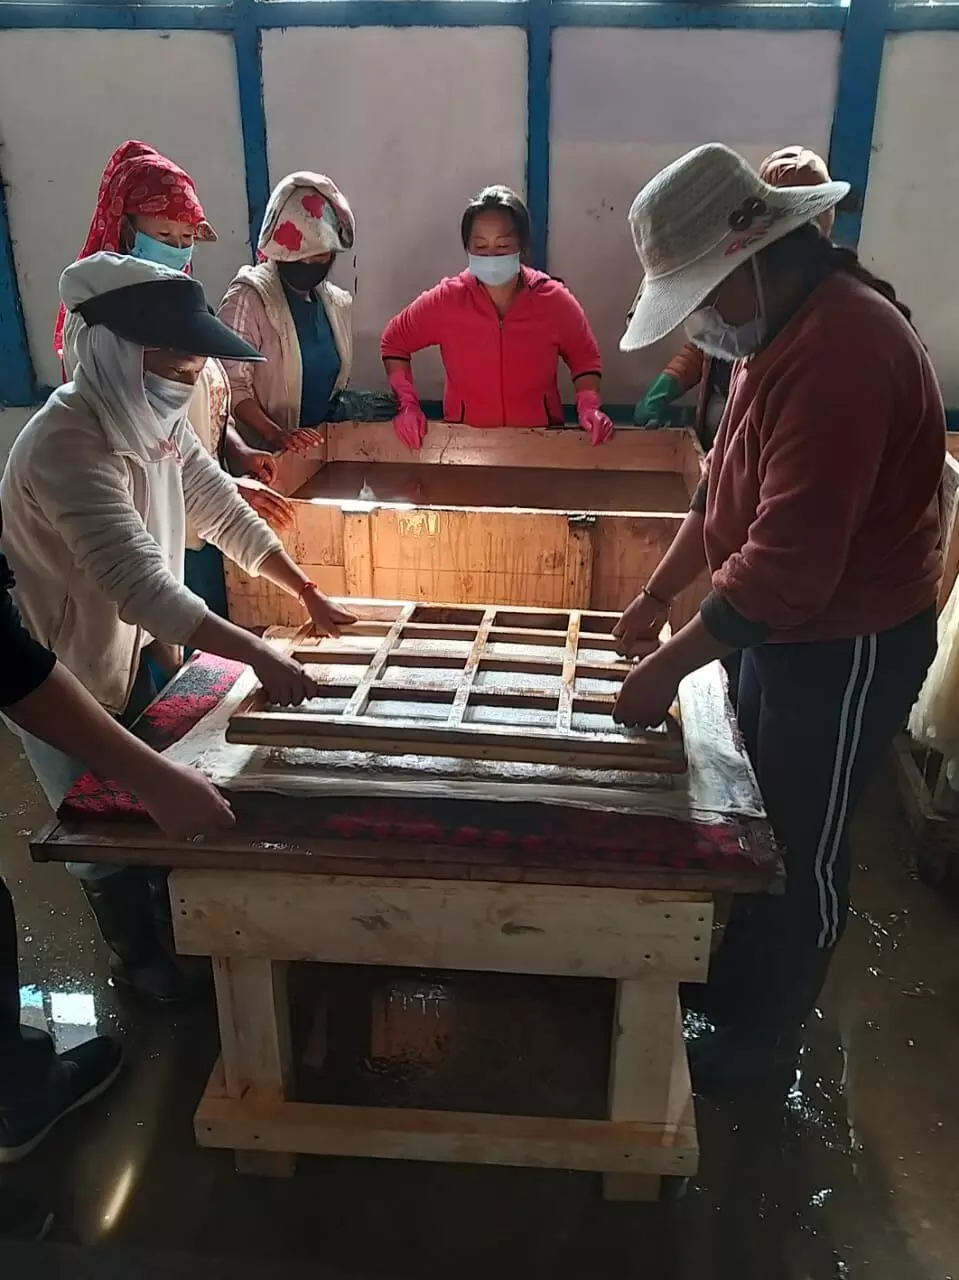 तवांग के monpa handmade paper अब बनेंगे Local से Global,मिलेगा रोजगार